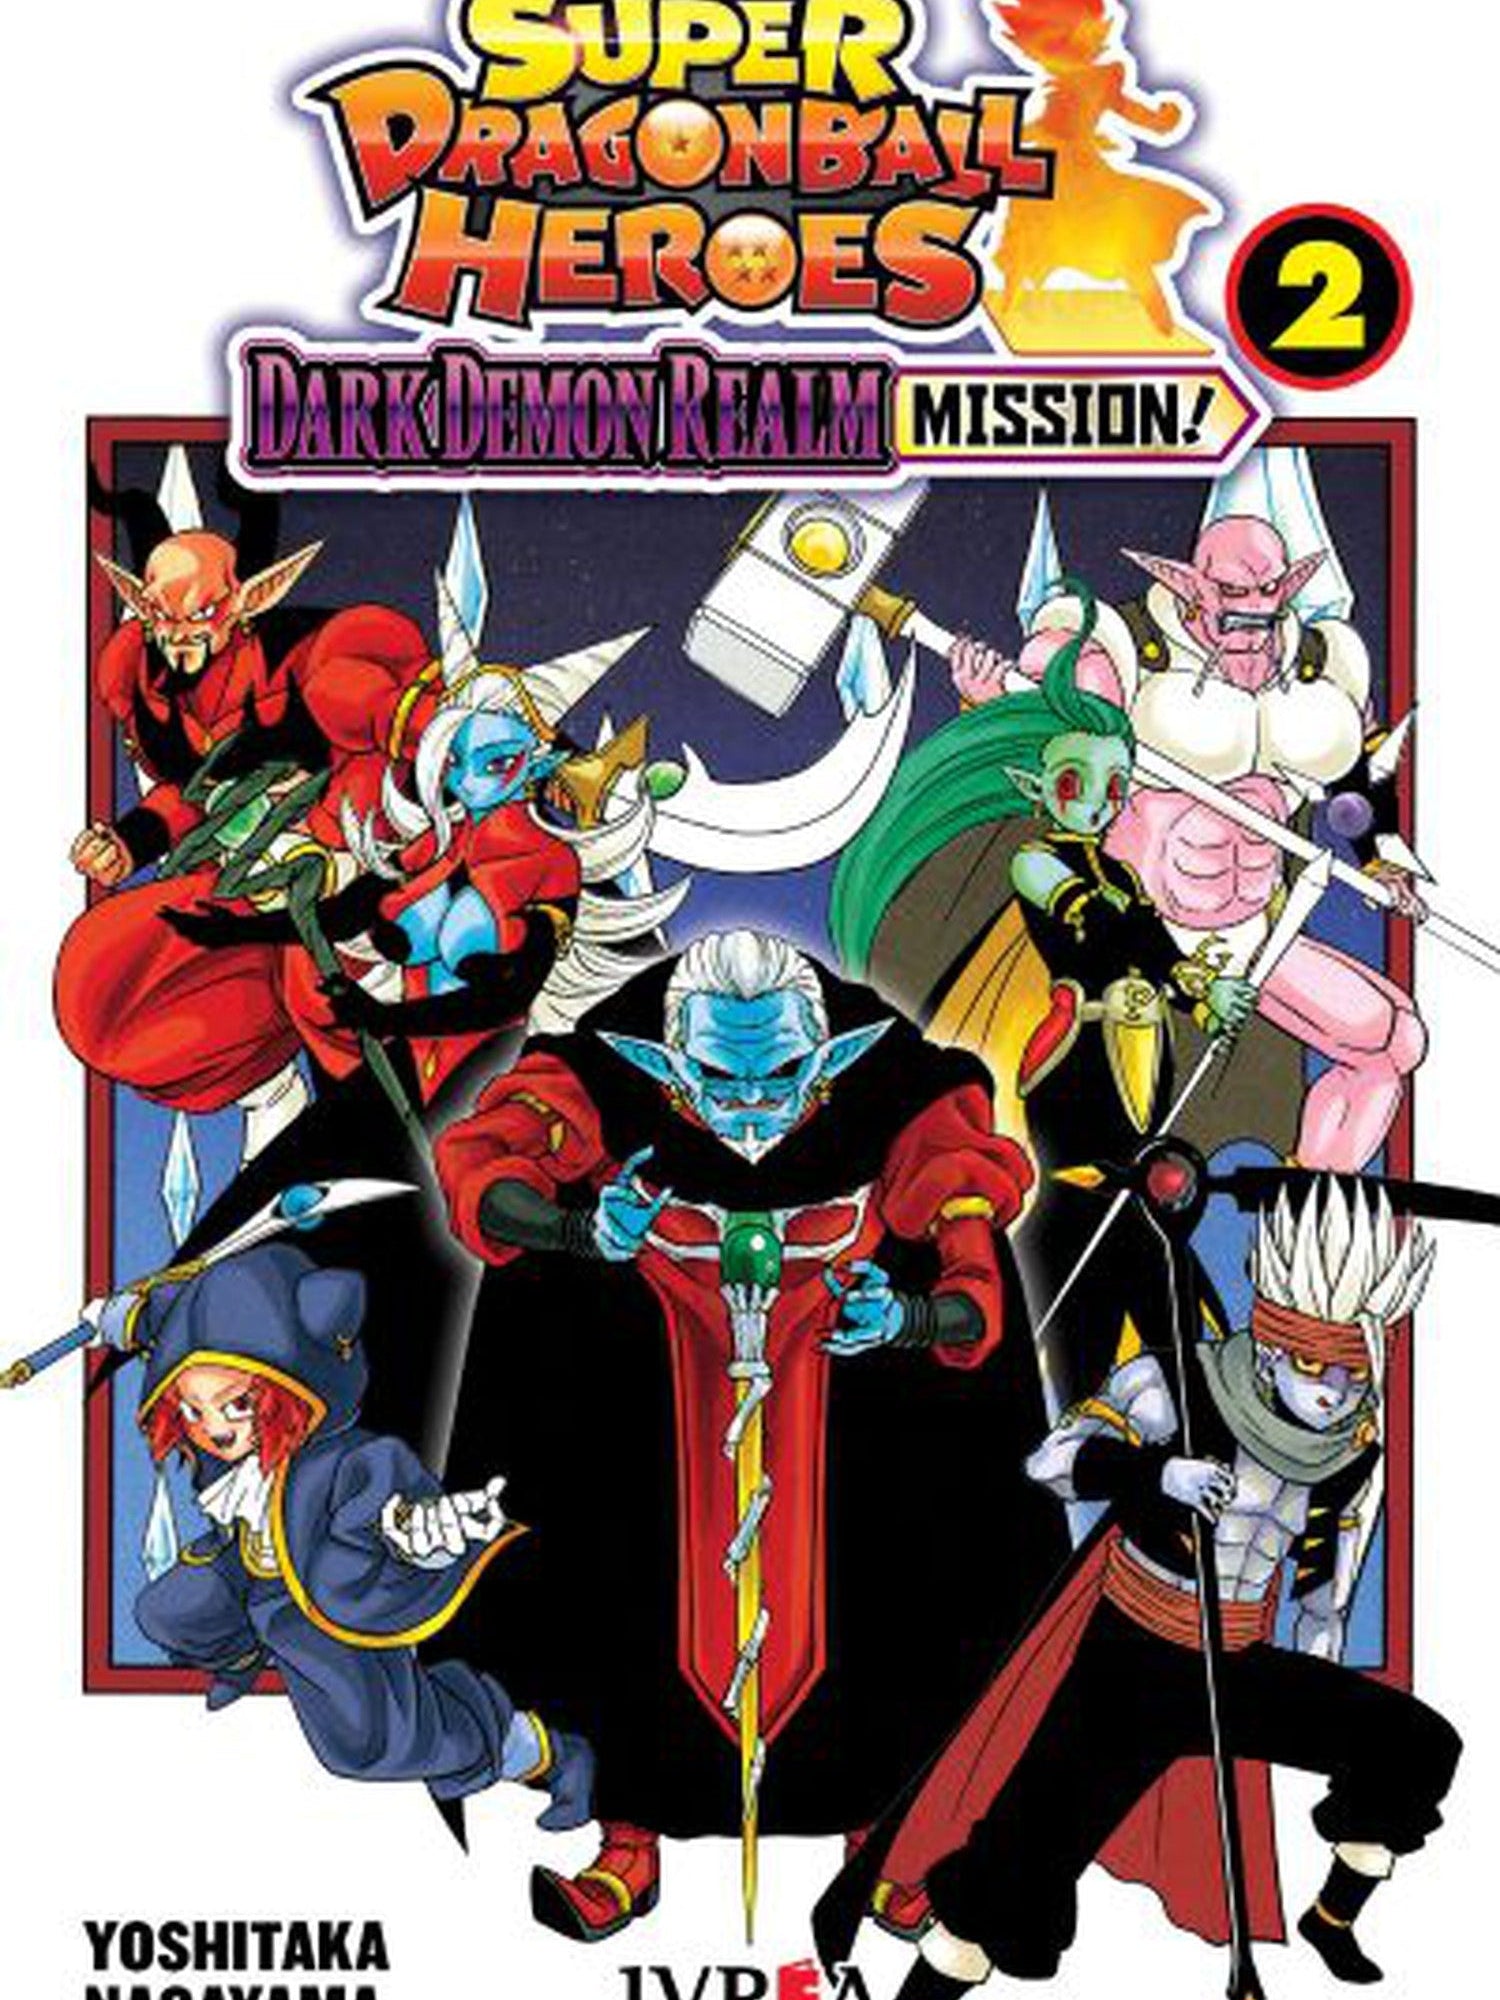 Super Dragon Ball Heroes: Dark Demons Realm Mission 2 Ivrea Argentina ENcuadrocomics